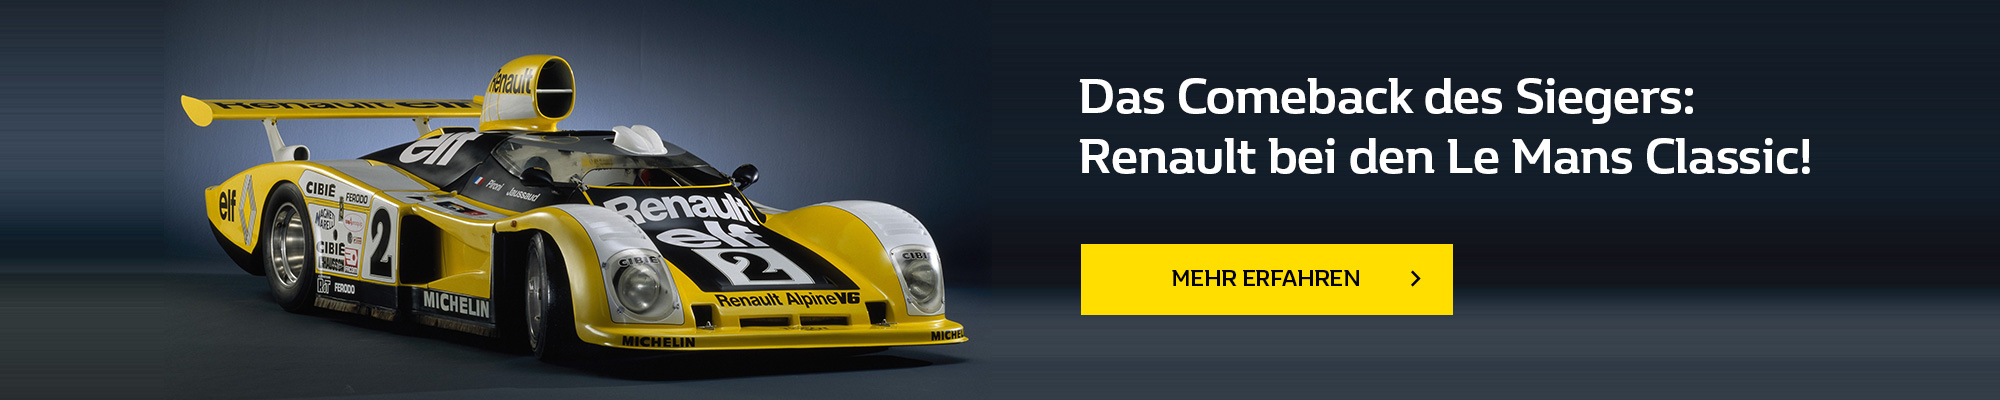 Das Comeback des Siegers: Renault bei den Le Mans Classic